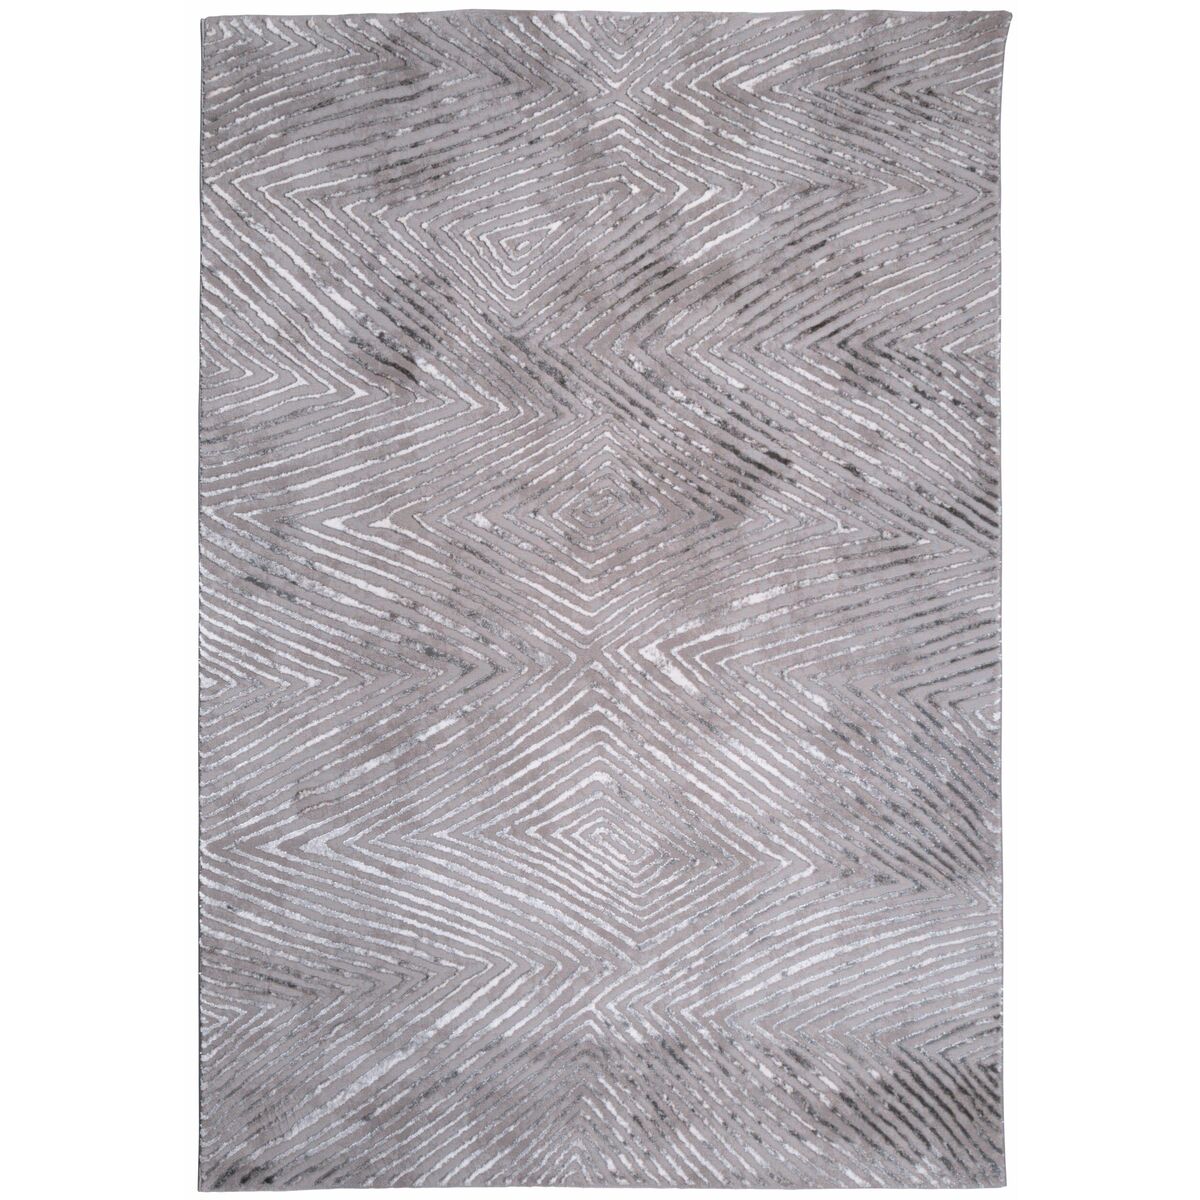 Dywan Flash geometryczny szaro-srebrny 80 x 150 cm